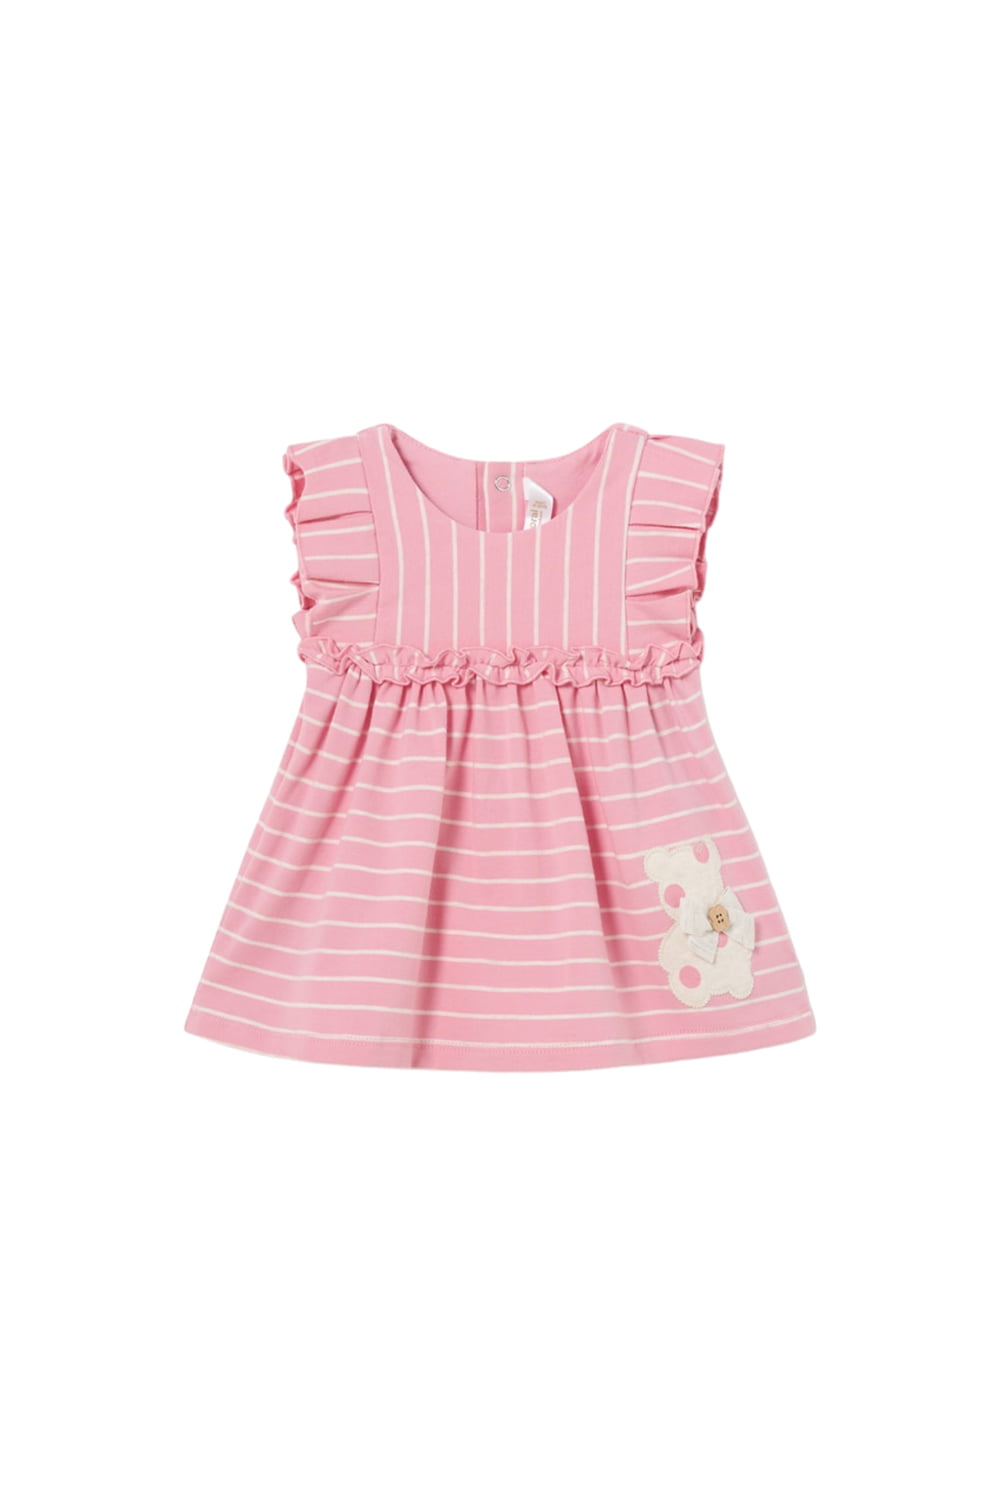 Παιδικό Φόρεμα Για Κορίτσι MAYORAL 24-01810-039 Ροζ